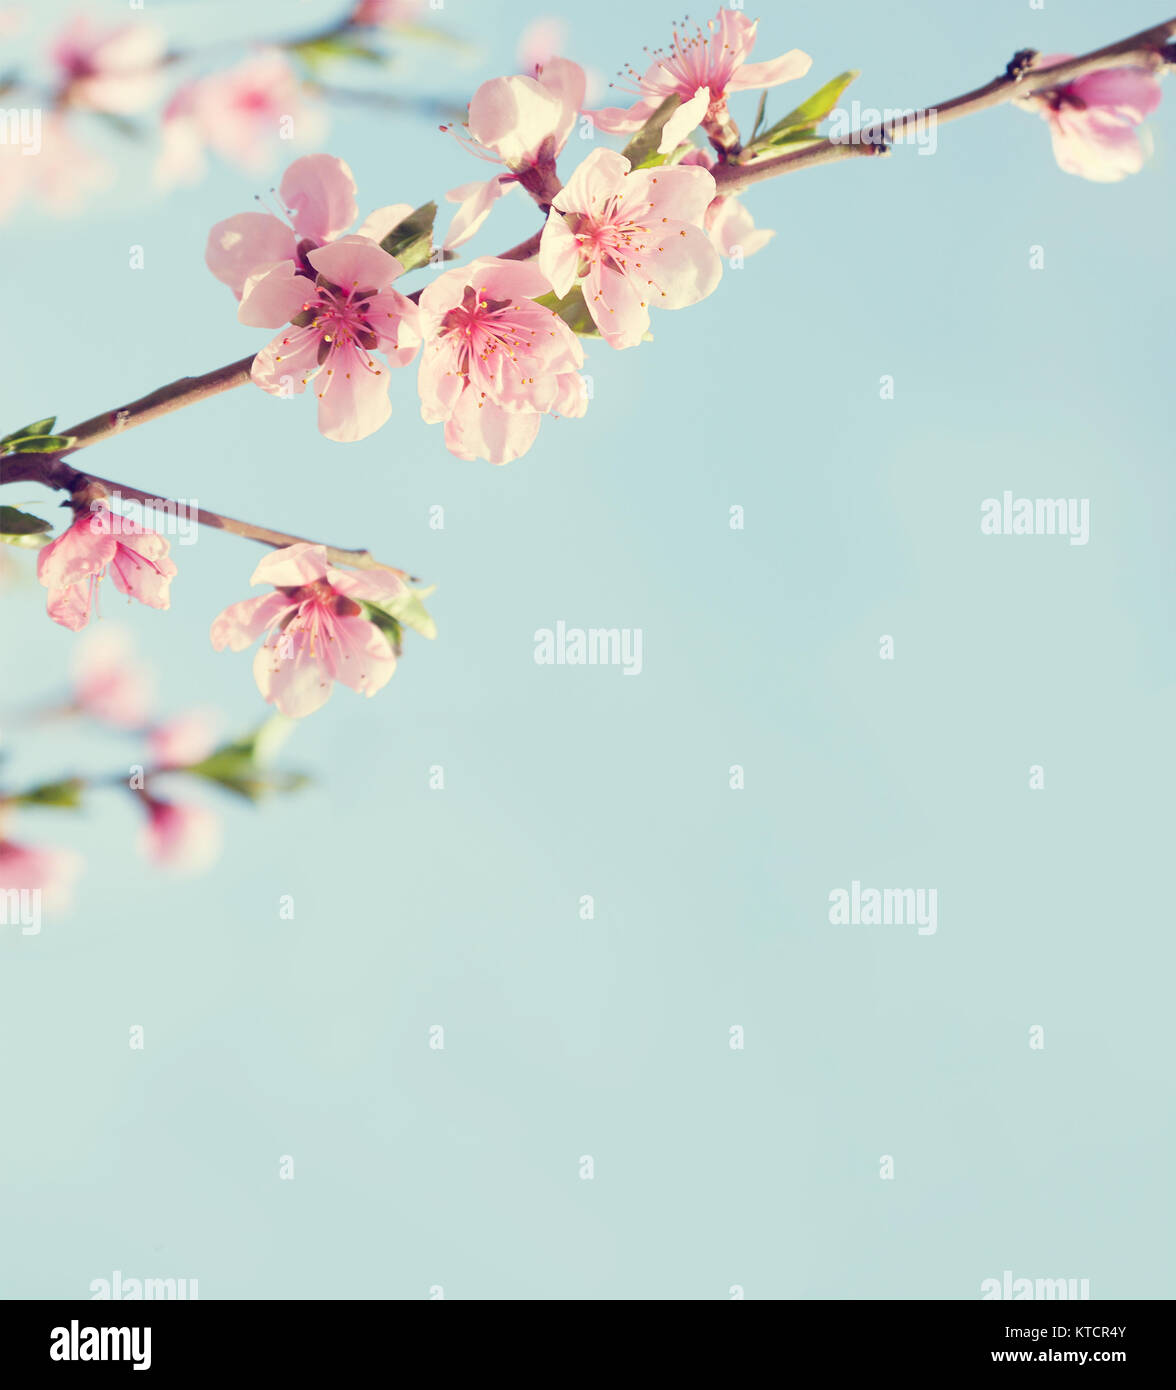 Zweige mit schönen rosa Blumen (Pfirsich) gegen den blauen Himmel. Selektive konzentrieren. Getönten Bild. Stockfoto